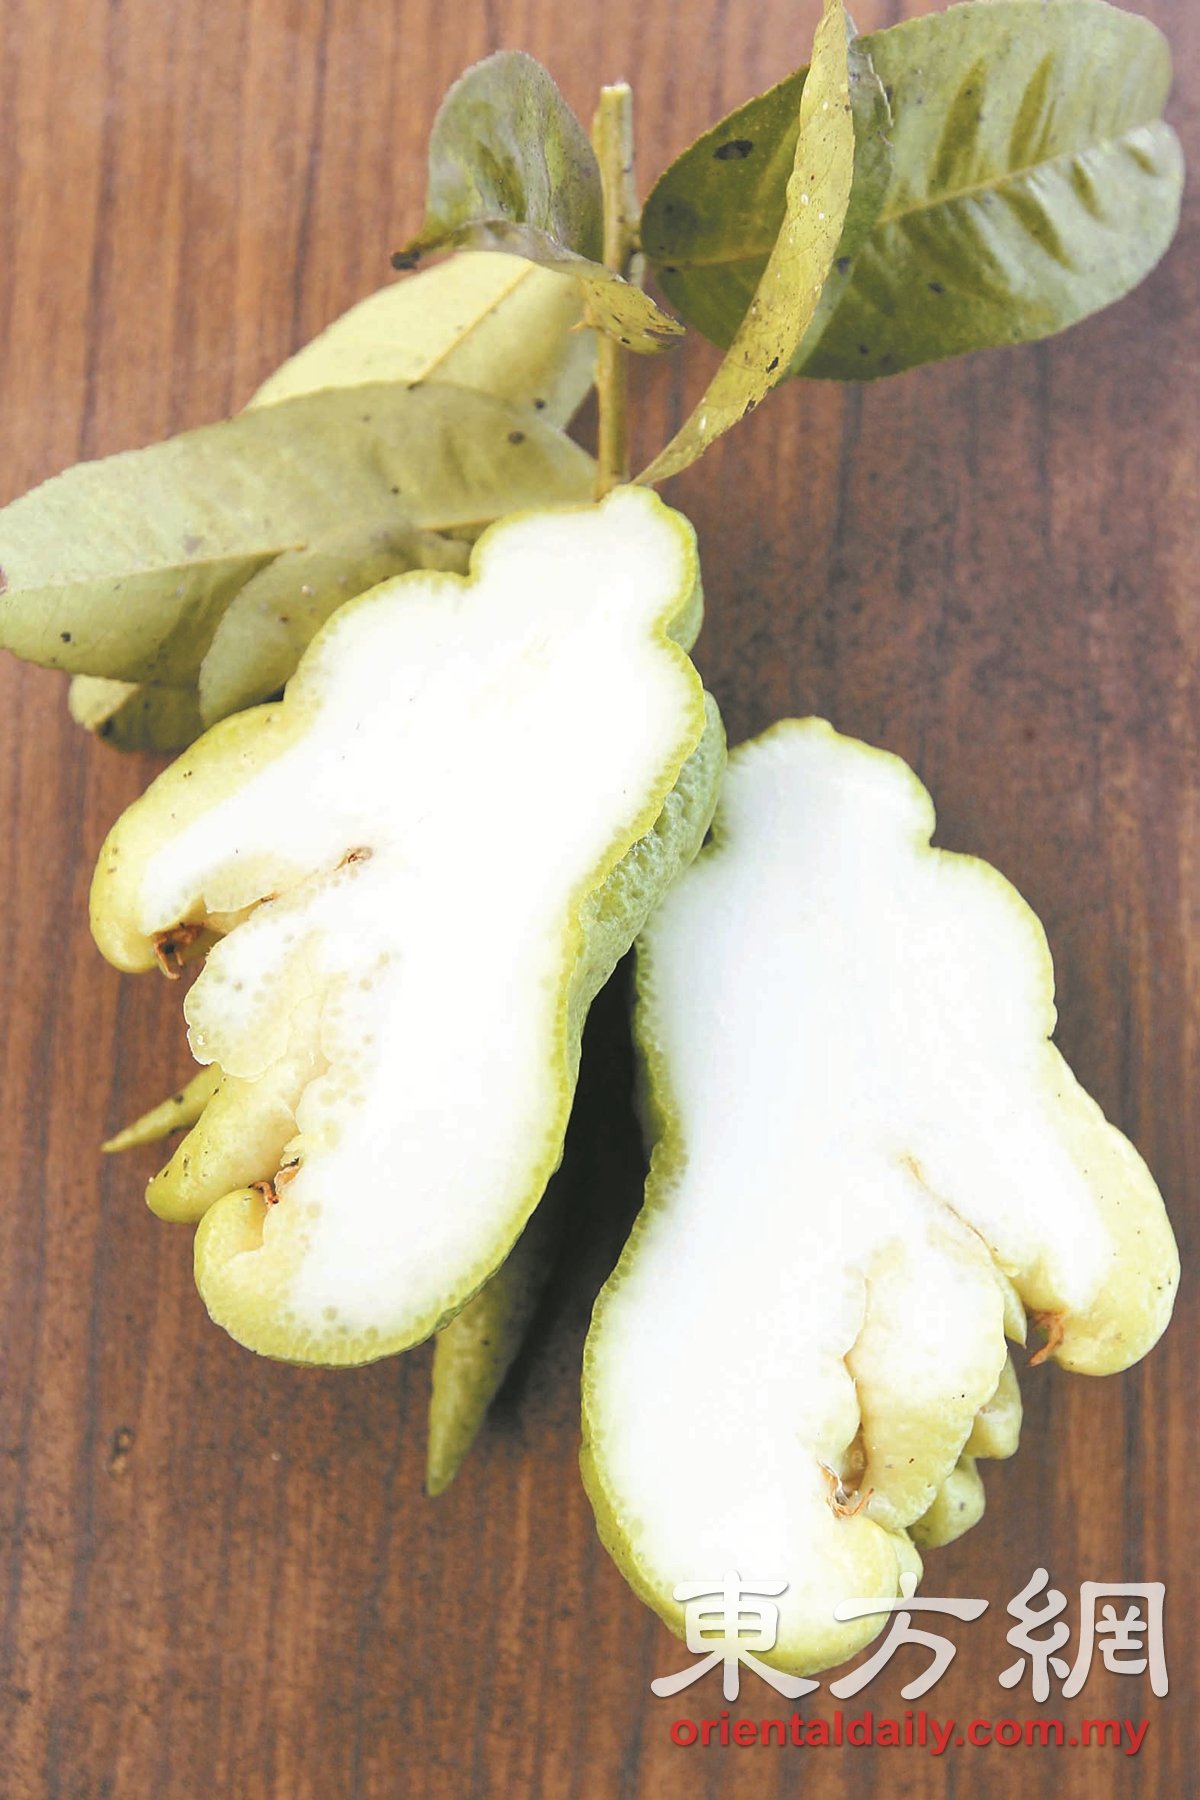 佛手柑的外皮呈浅绿色，内部的果肉则呈白色。